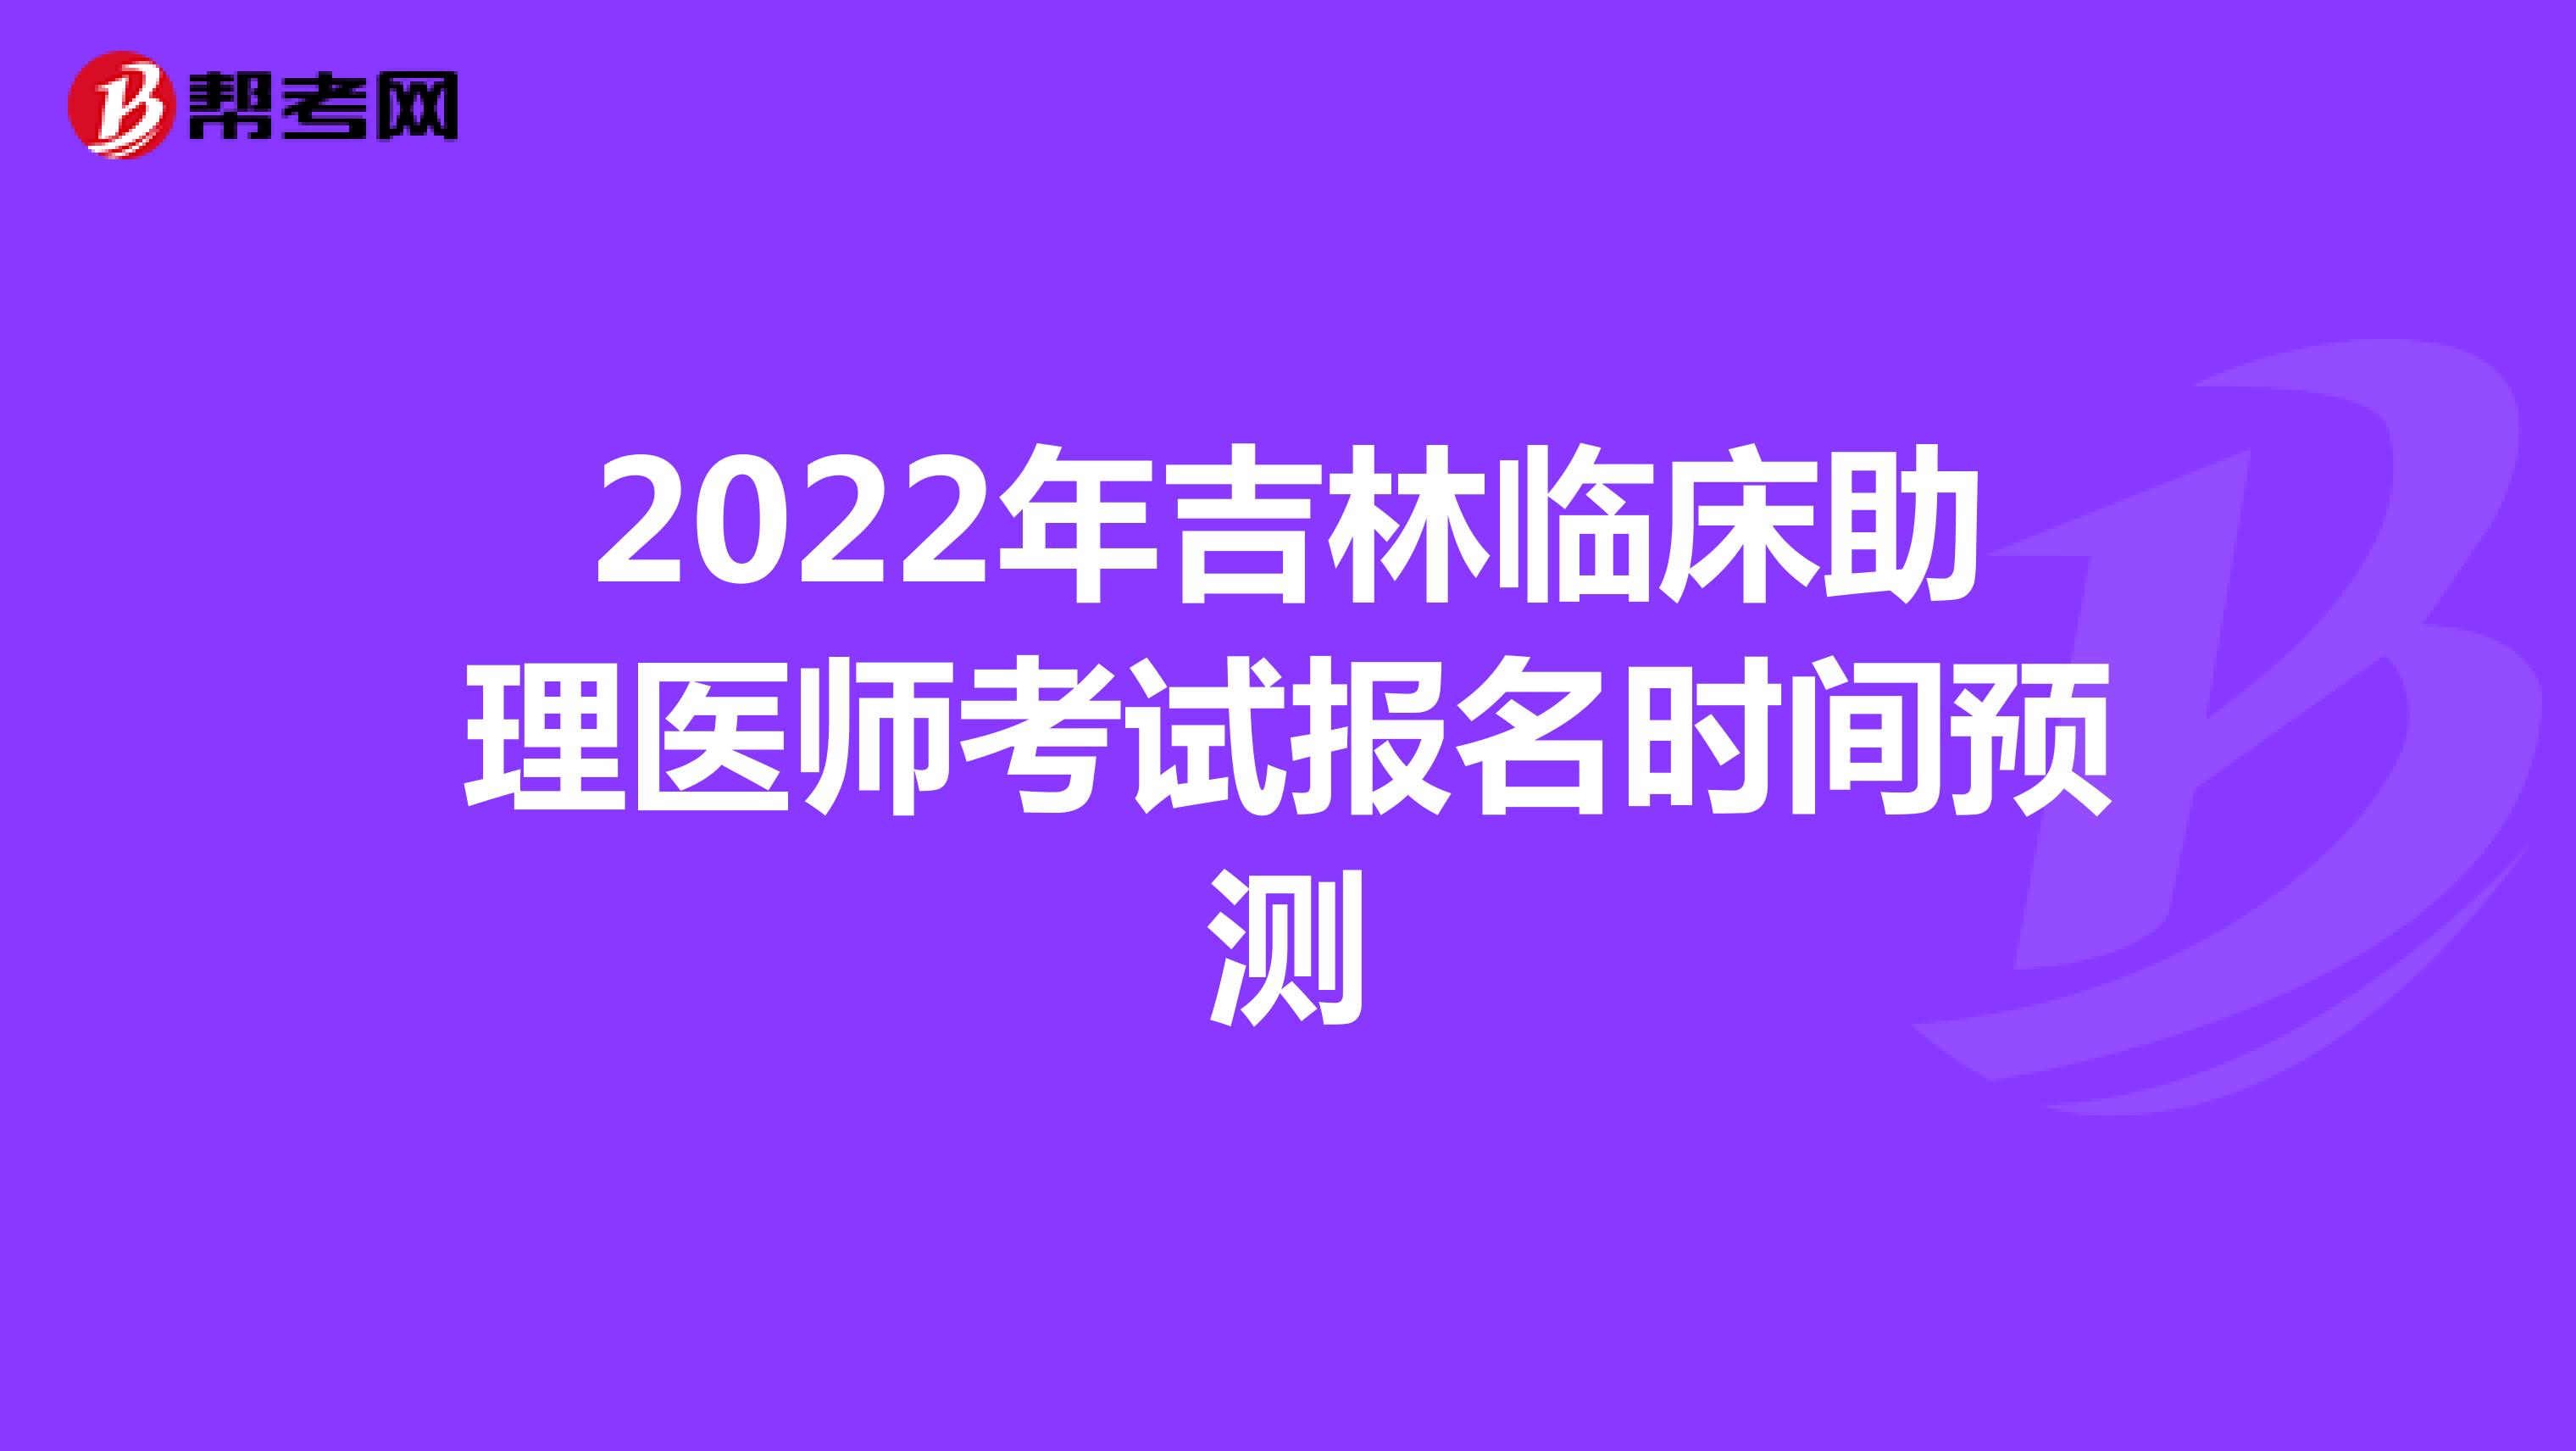 2022年吉林临床助理医师考试报名时间预测